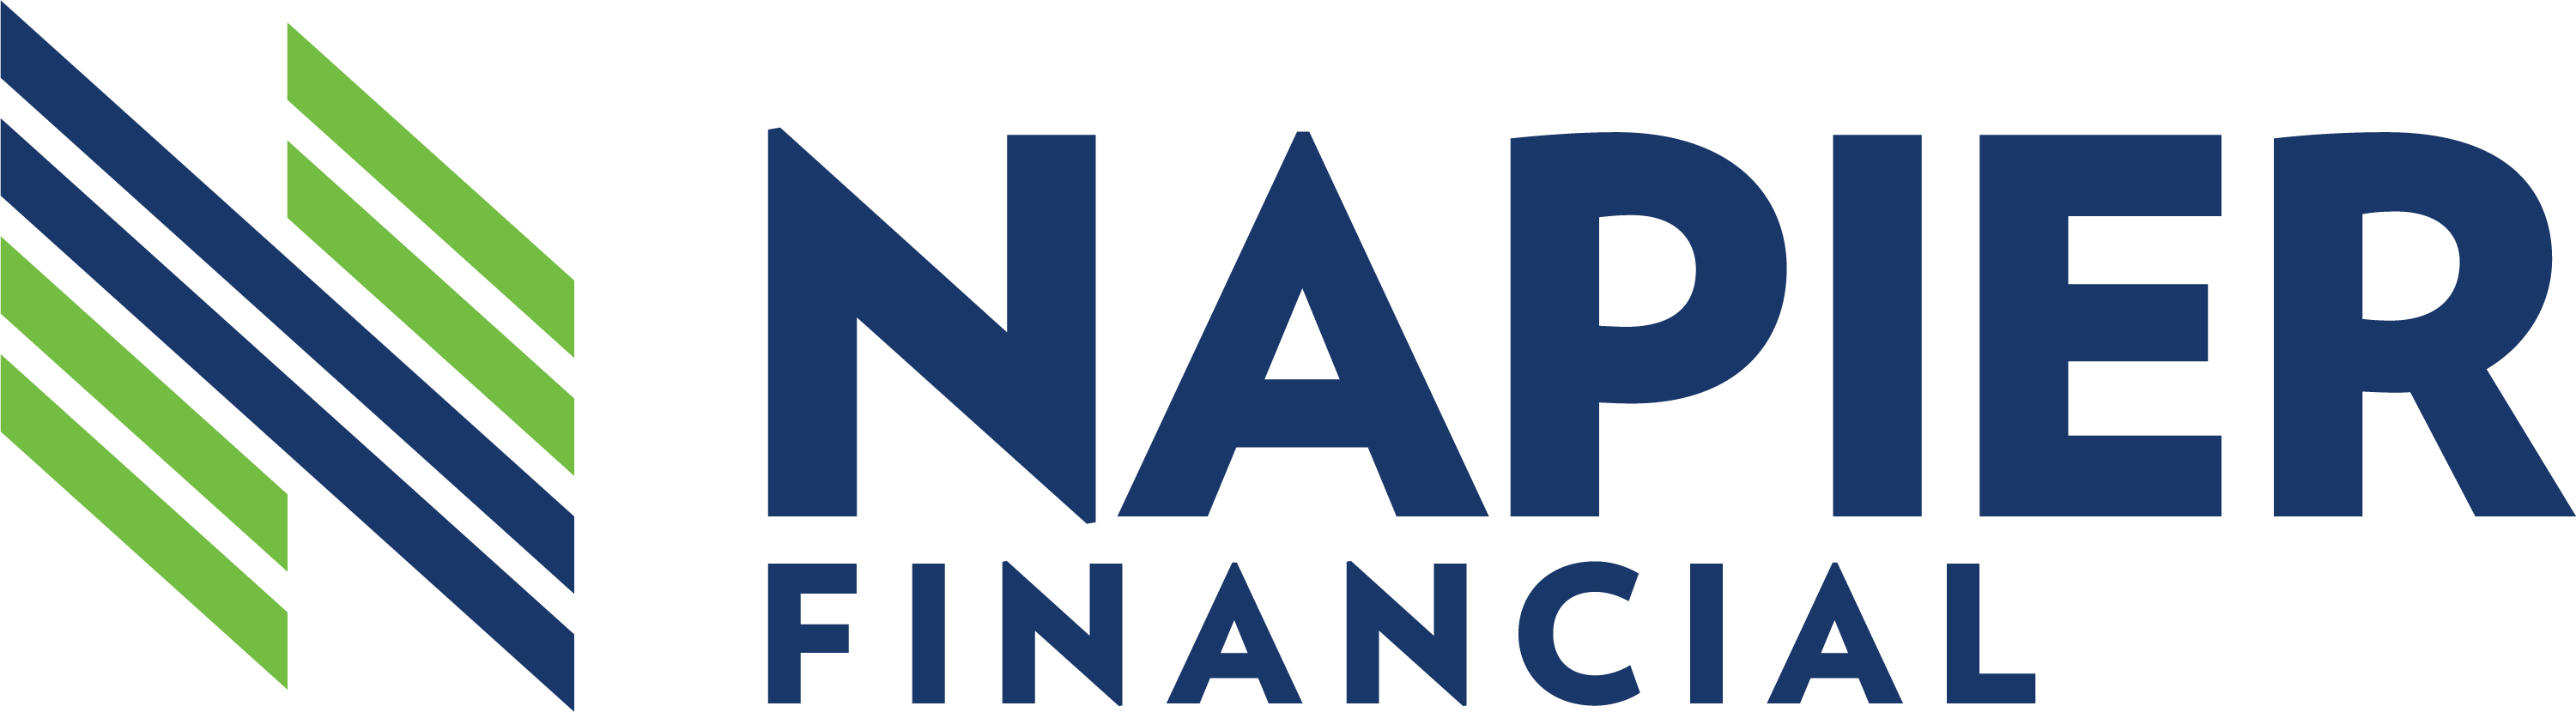 napier-financial-logo